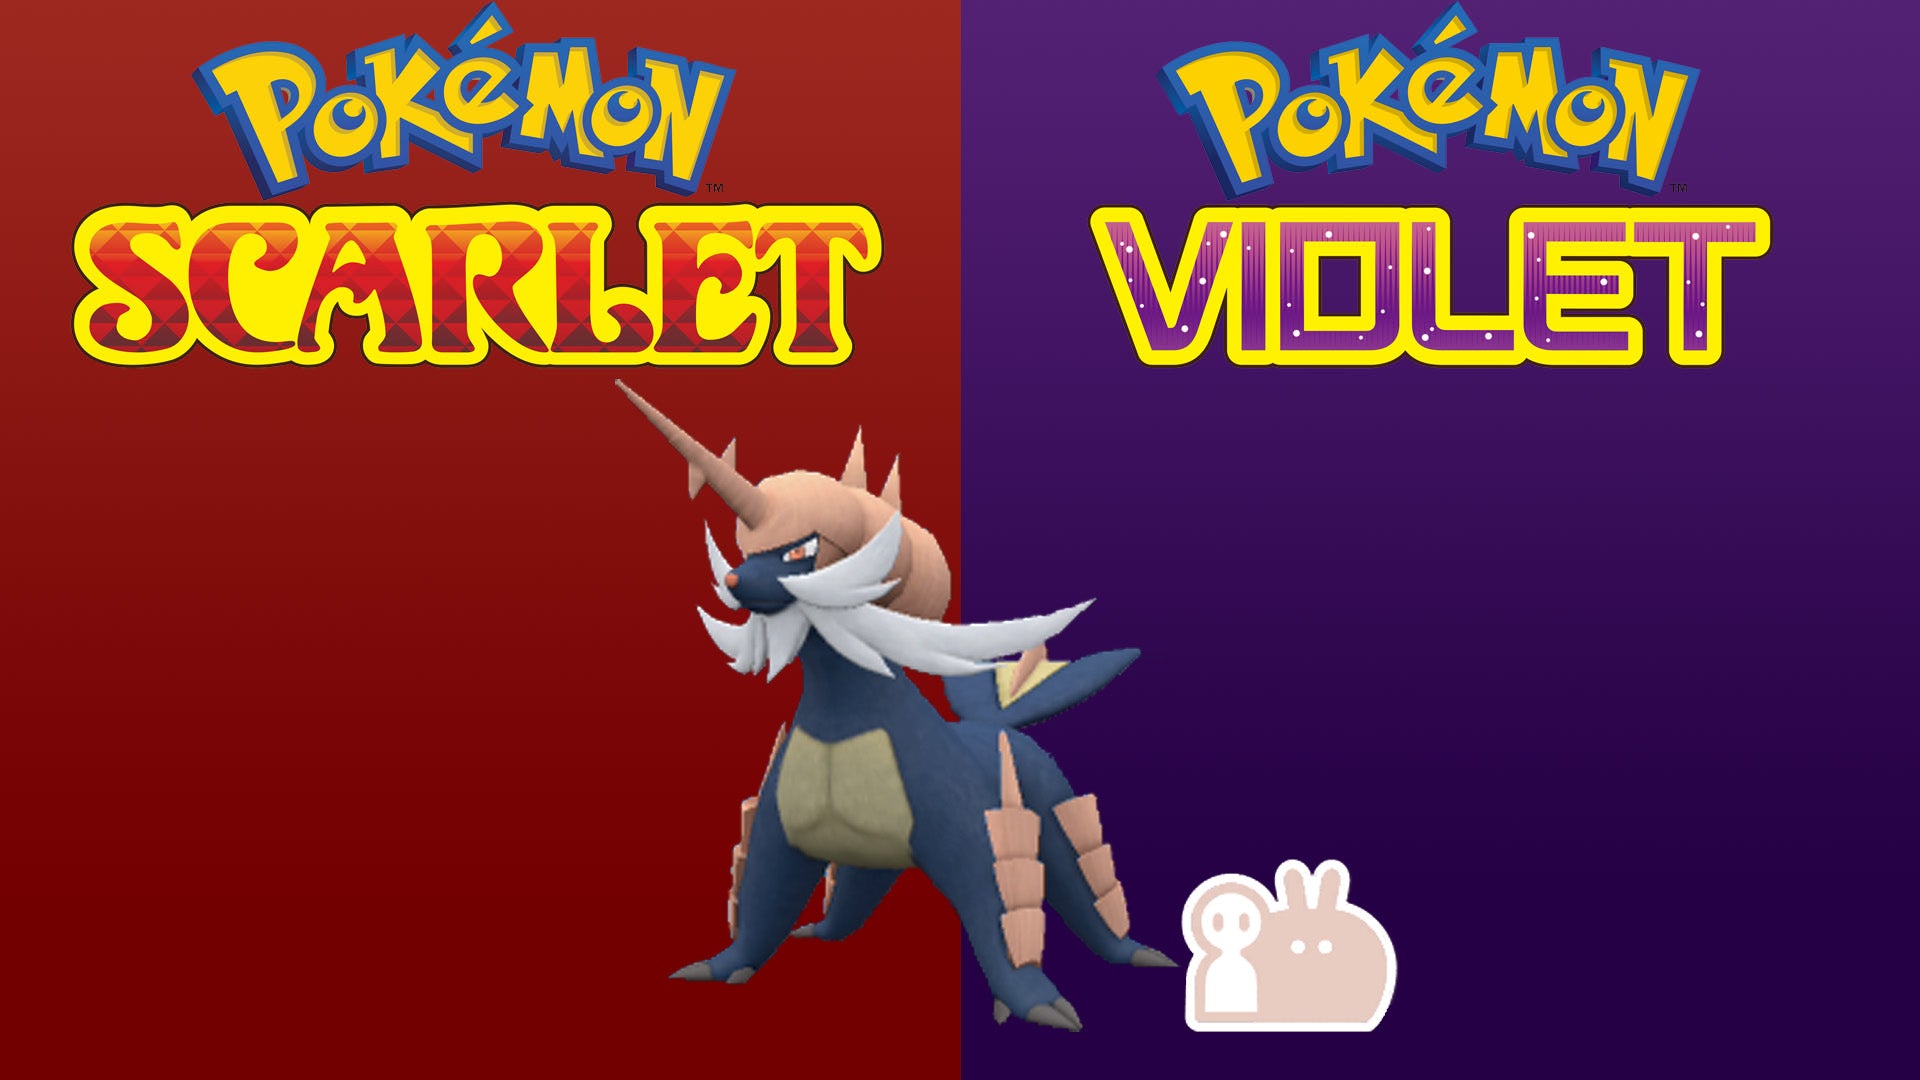 PokeMarkett - Buy Shiny Pokemon 6IV max EV, Scarlet & Violet